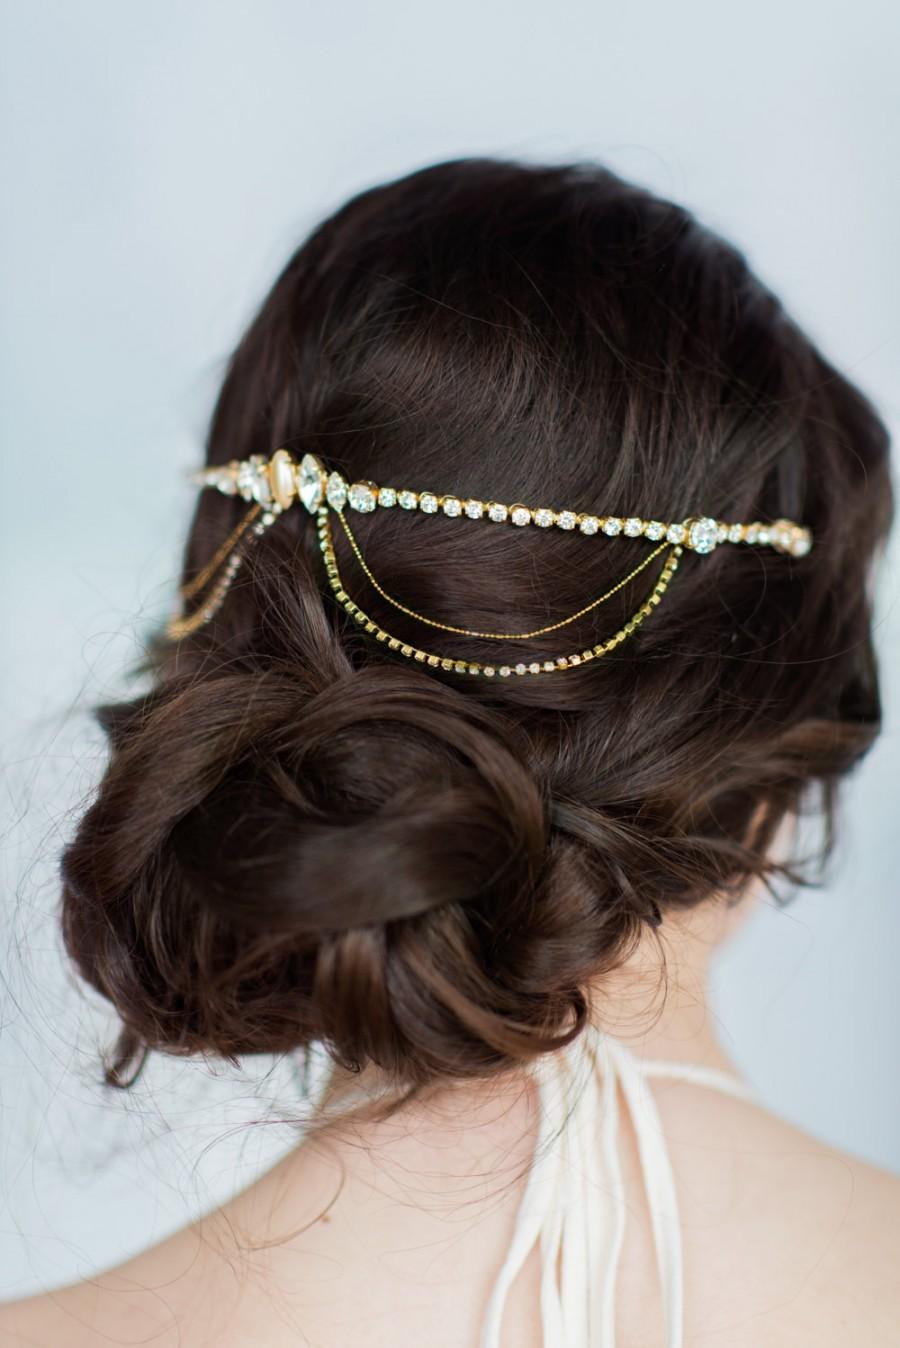 Wedding - Gold Hair Chain, Crystal Hair Chain, Draped Hair Chain, Crystal Headpiece, Crystal Headband, Bridal Hair Chain, Bohemian Headpiece, GISELLE